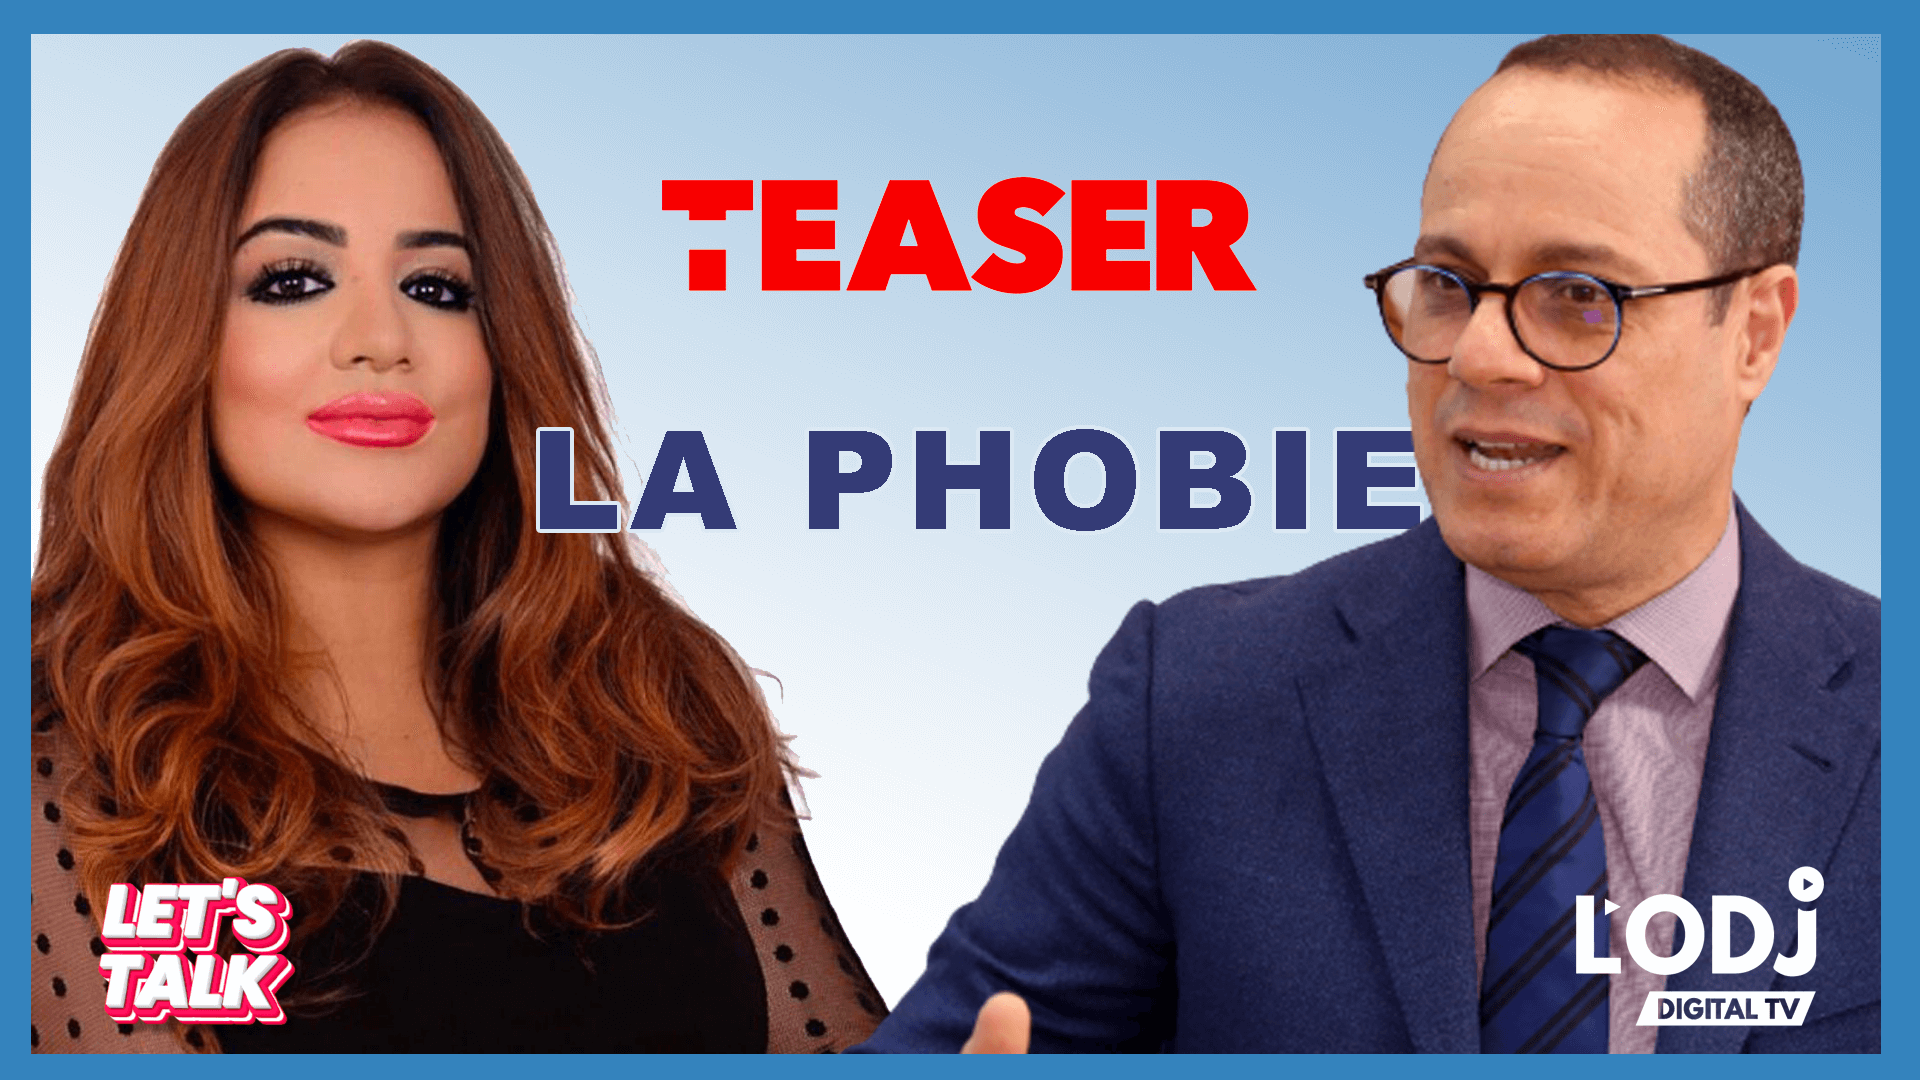 Teaser : Let's Talk reçoit Pr. Jalal Taoufiq au sujet de la phobie